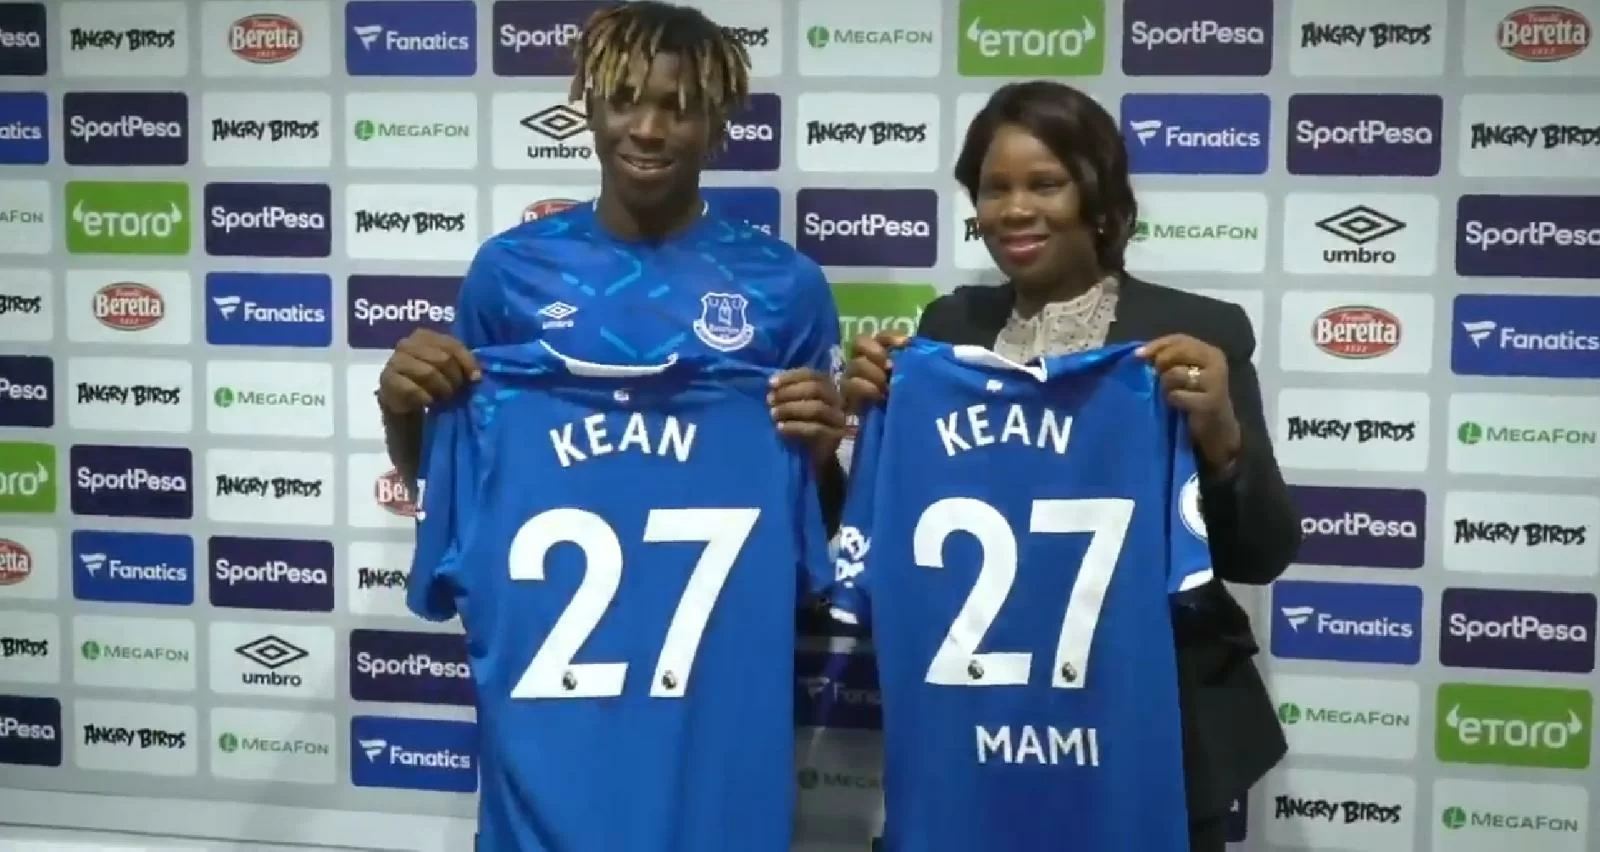 Kean all’Everton è ormai un caso: sostituito da subentrato